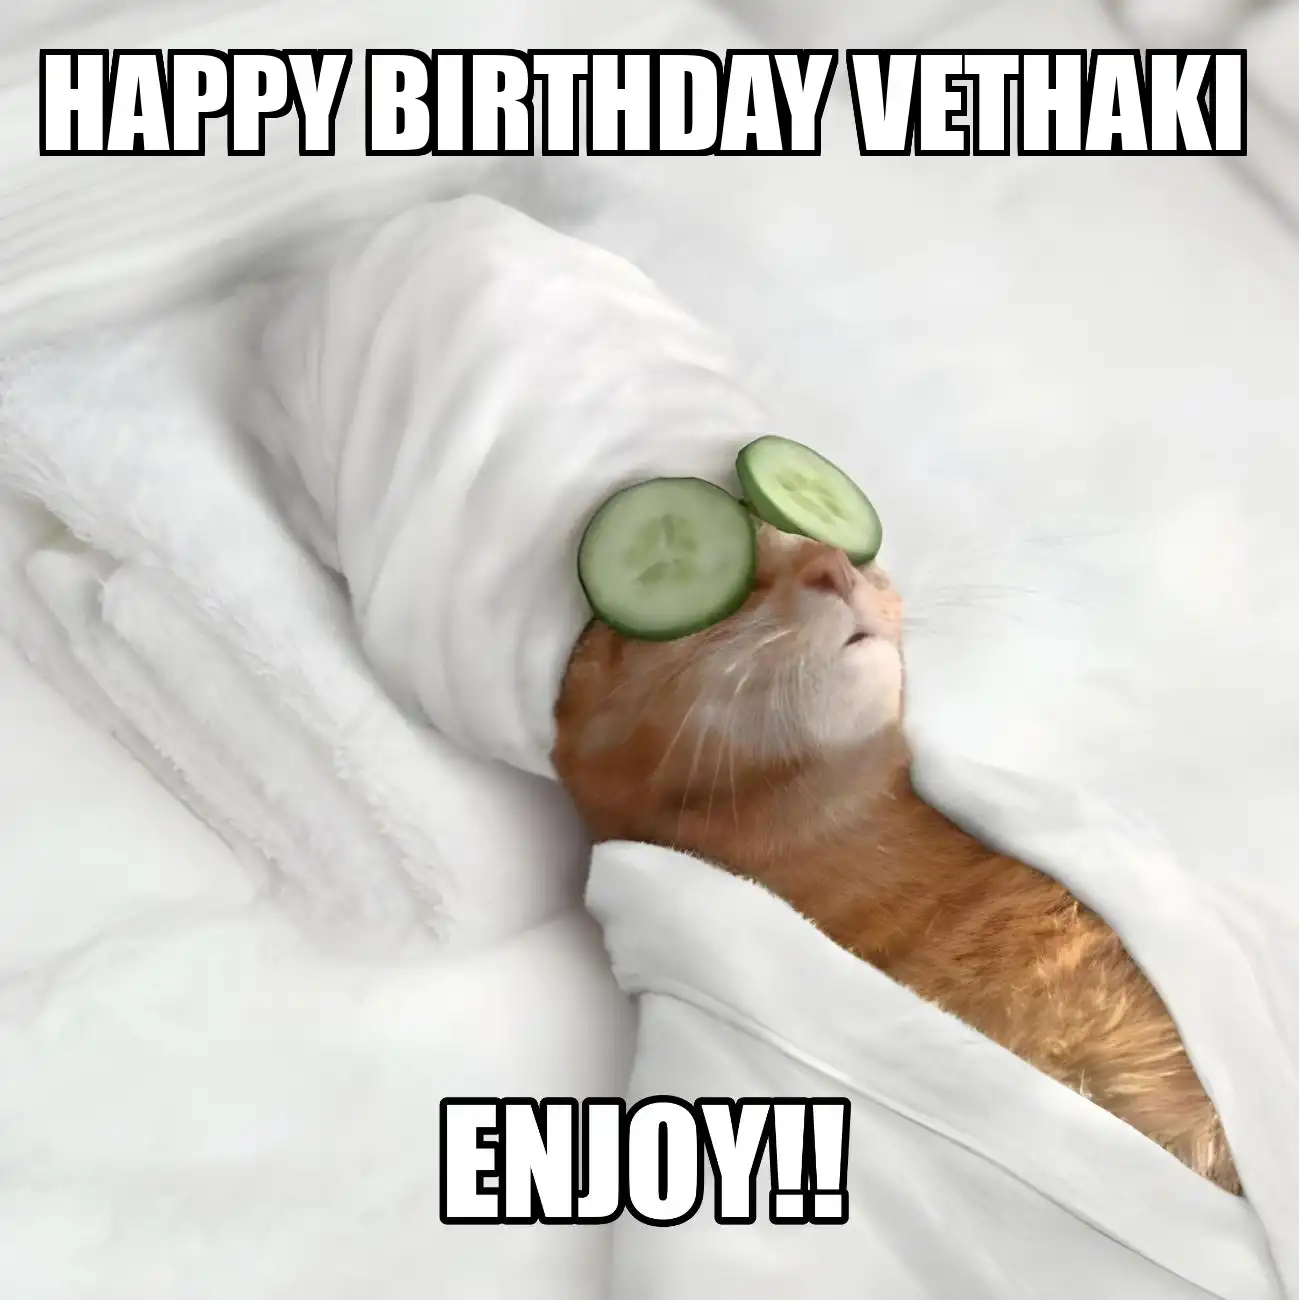 Happy Birthday Vethaki Enjoy Cat Meme